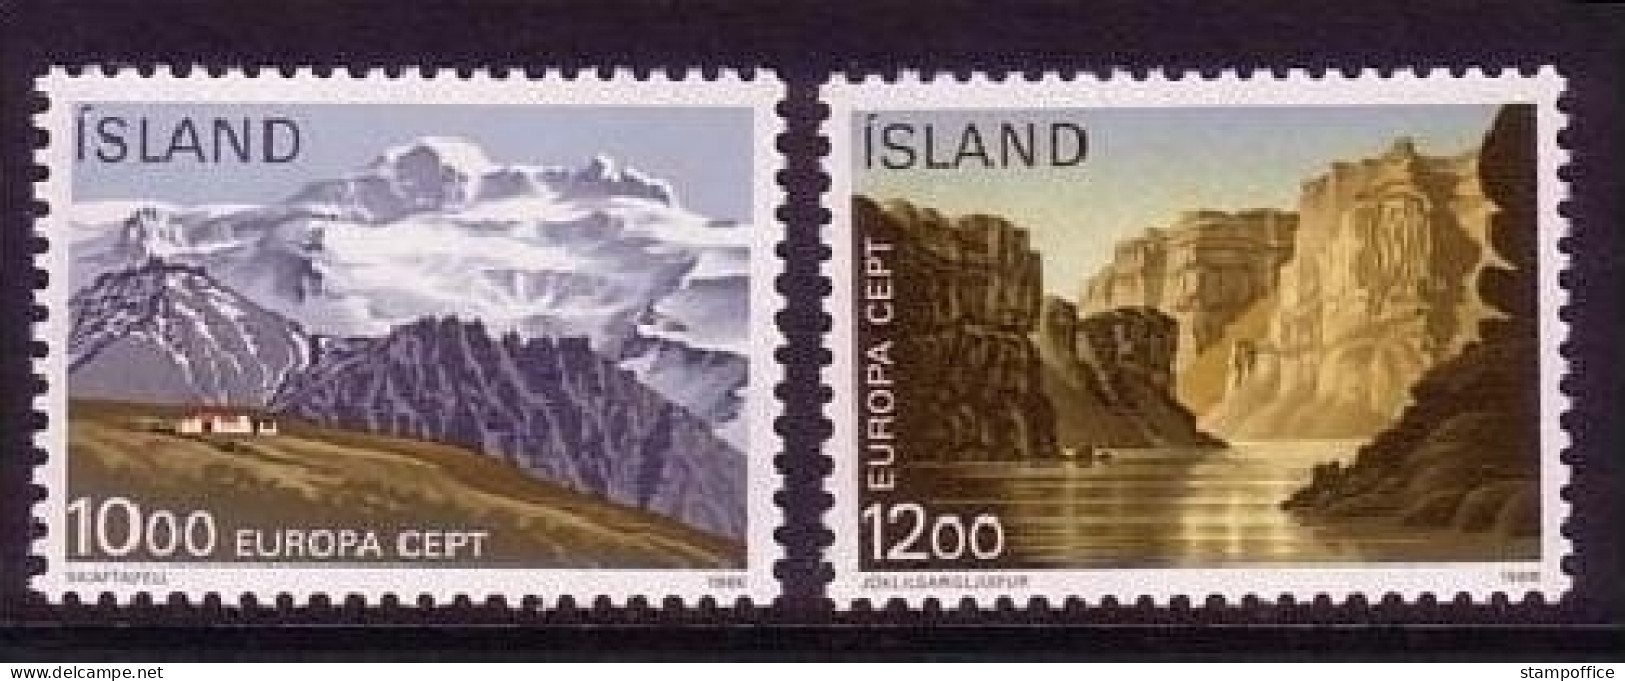 ISLAND MI-NR. 648-649 POSTFRISCH(MINT) EUROPA 1986 - NATUR- Und UMWELTSCHUTZ BERGE - 1986